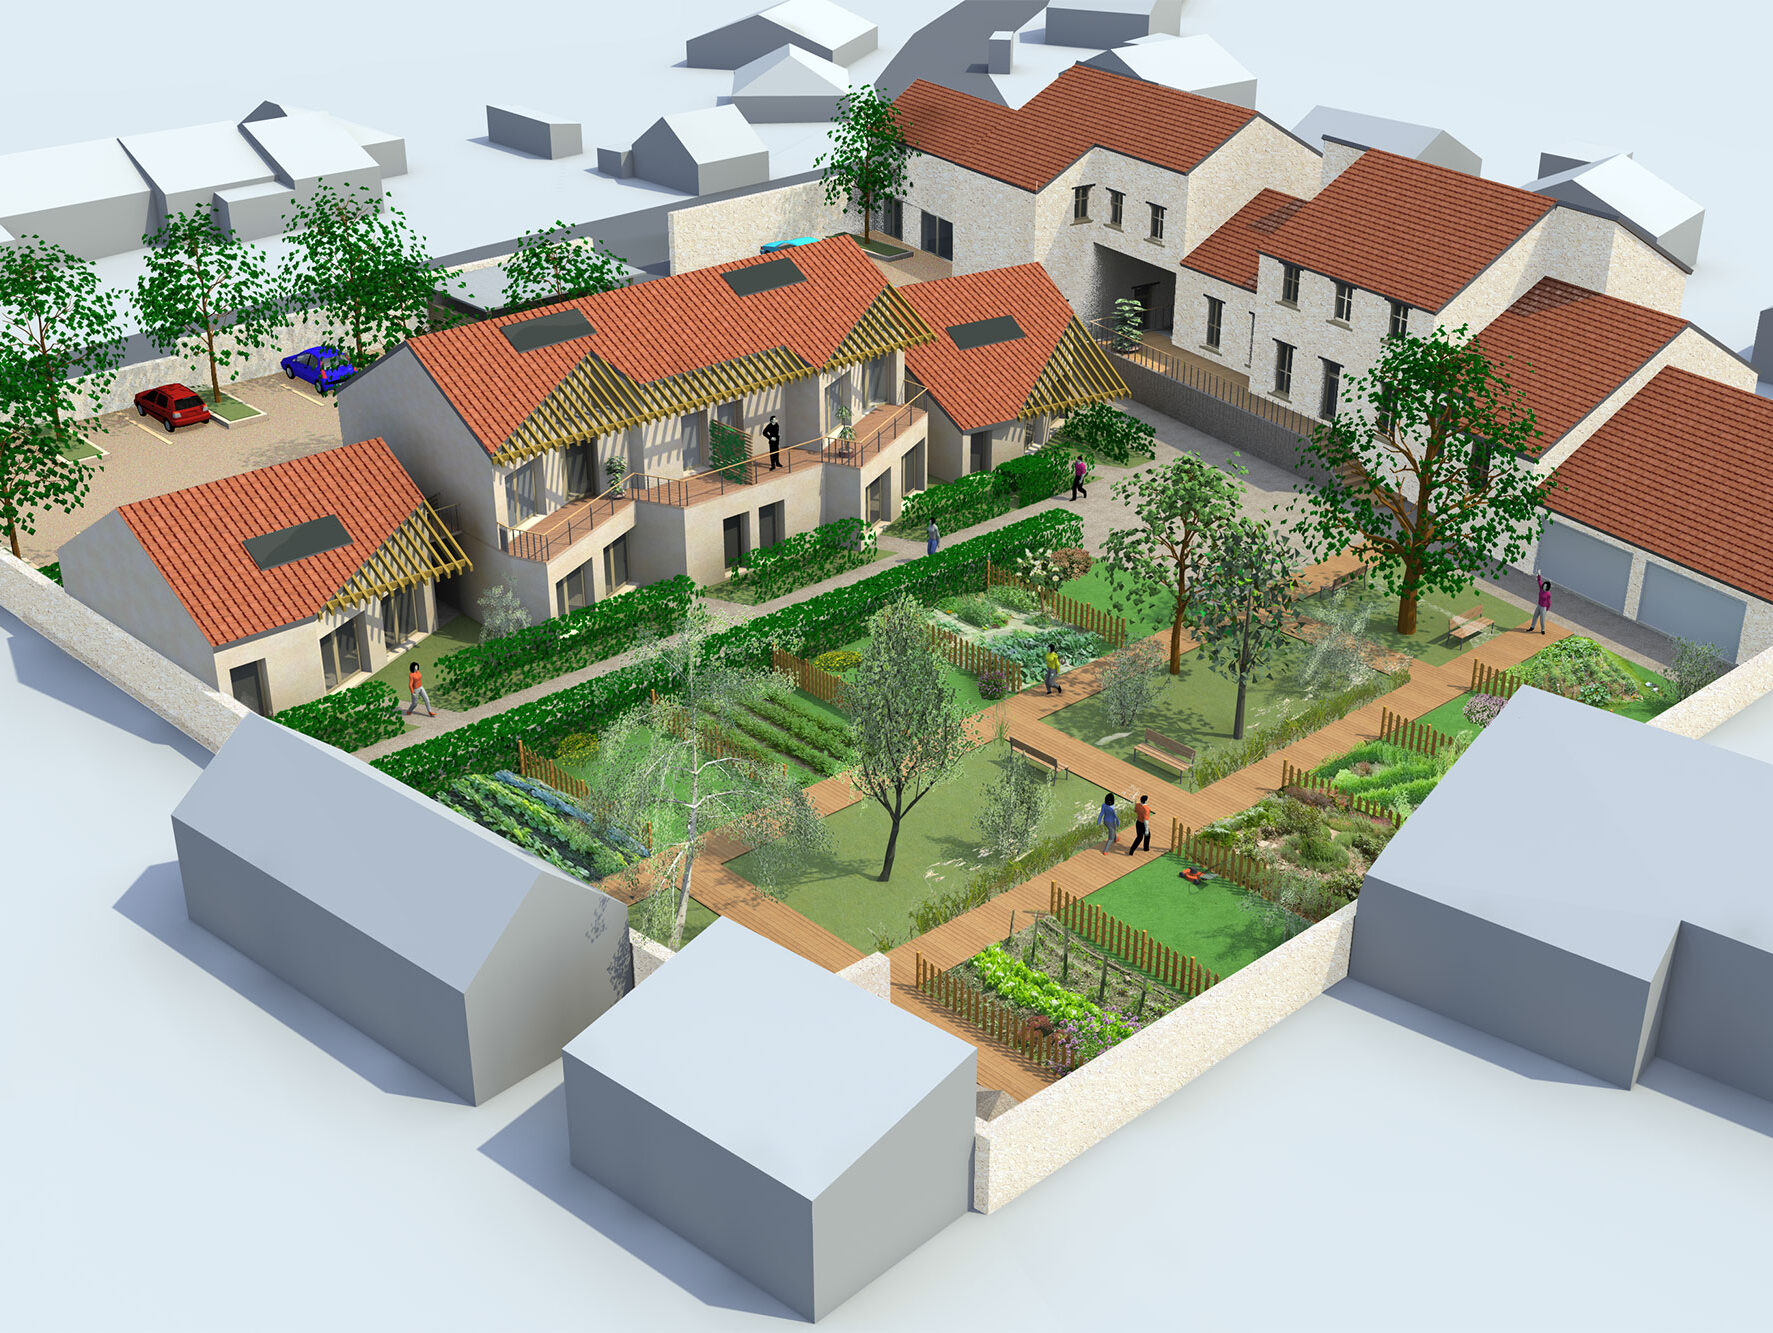 Programmation de l'aménagement d'un quartier écologique à Maisse